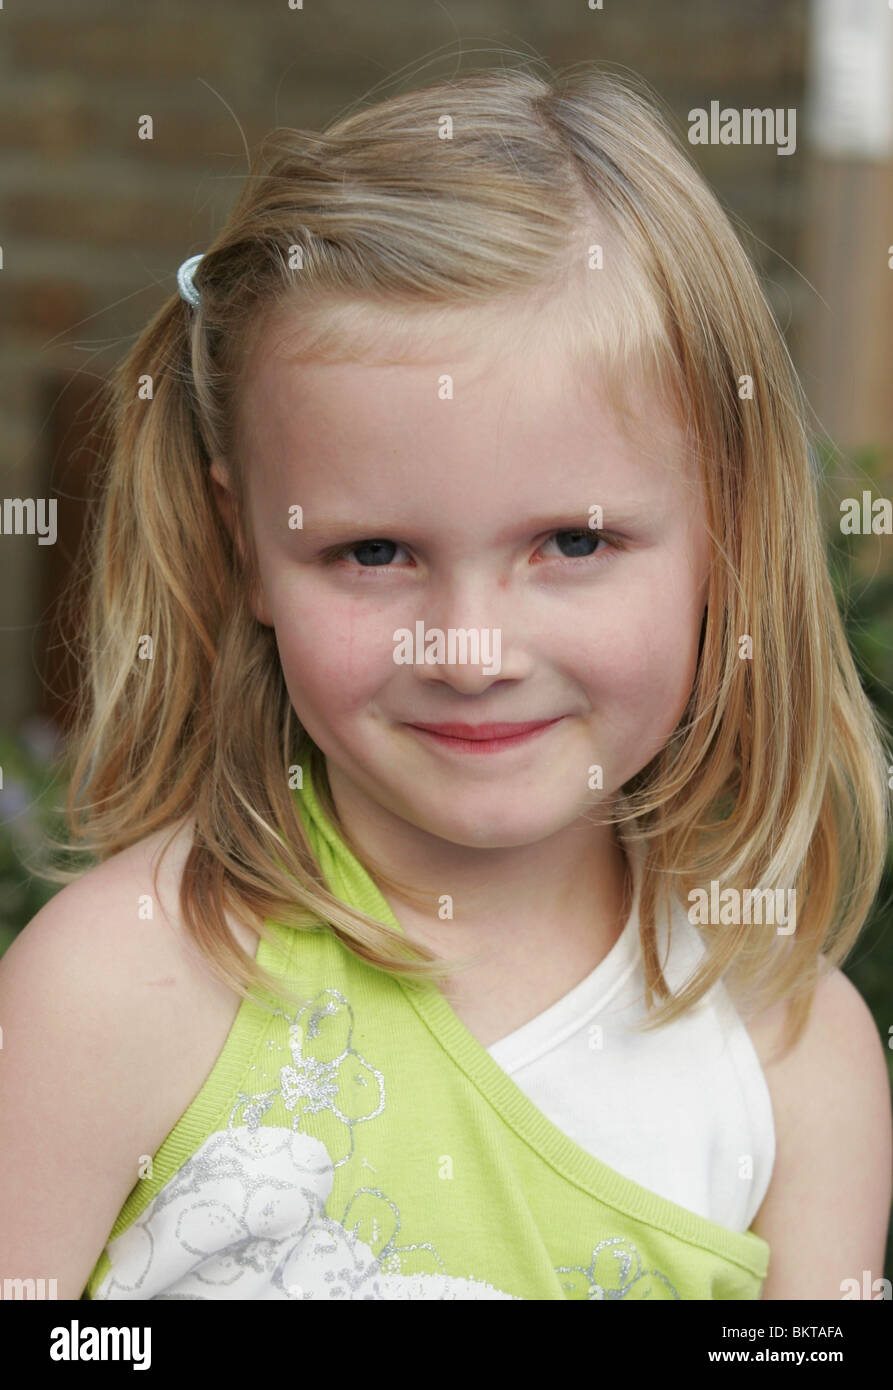 El retrato Niño de 4 años vista frontal de la cabeza y los hombros fuera en verano,desgaste SerieCVS417300 Foto de stock